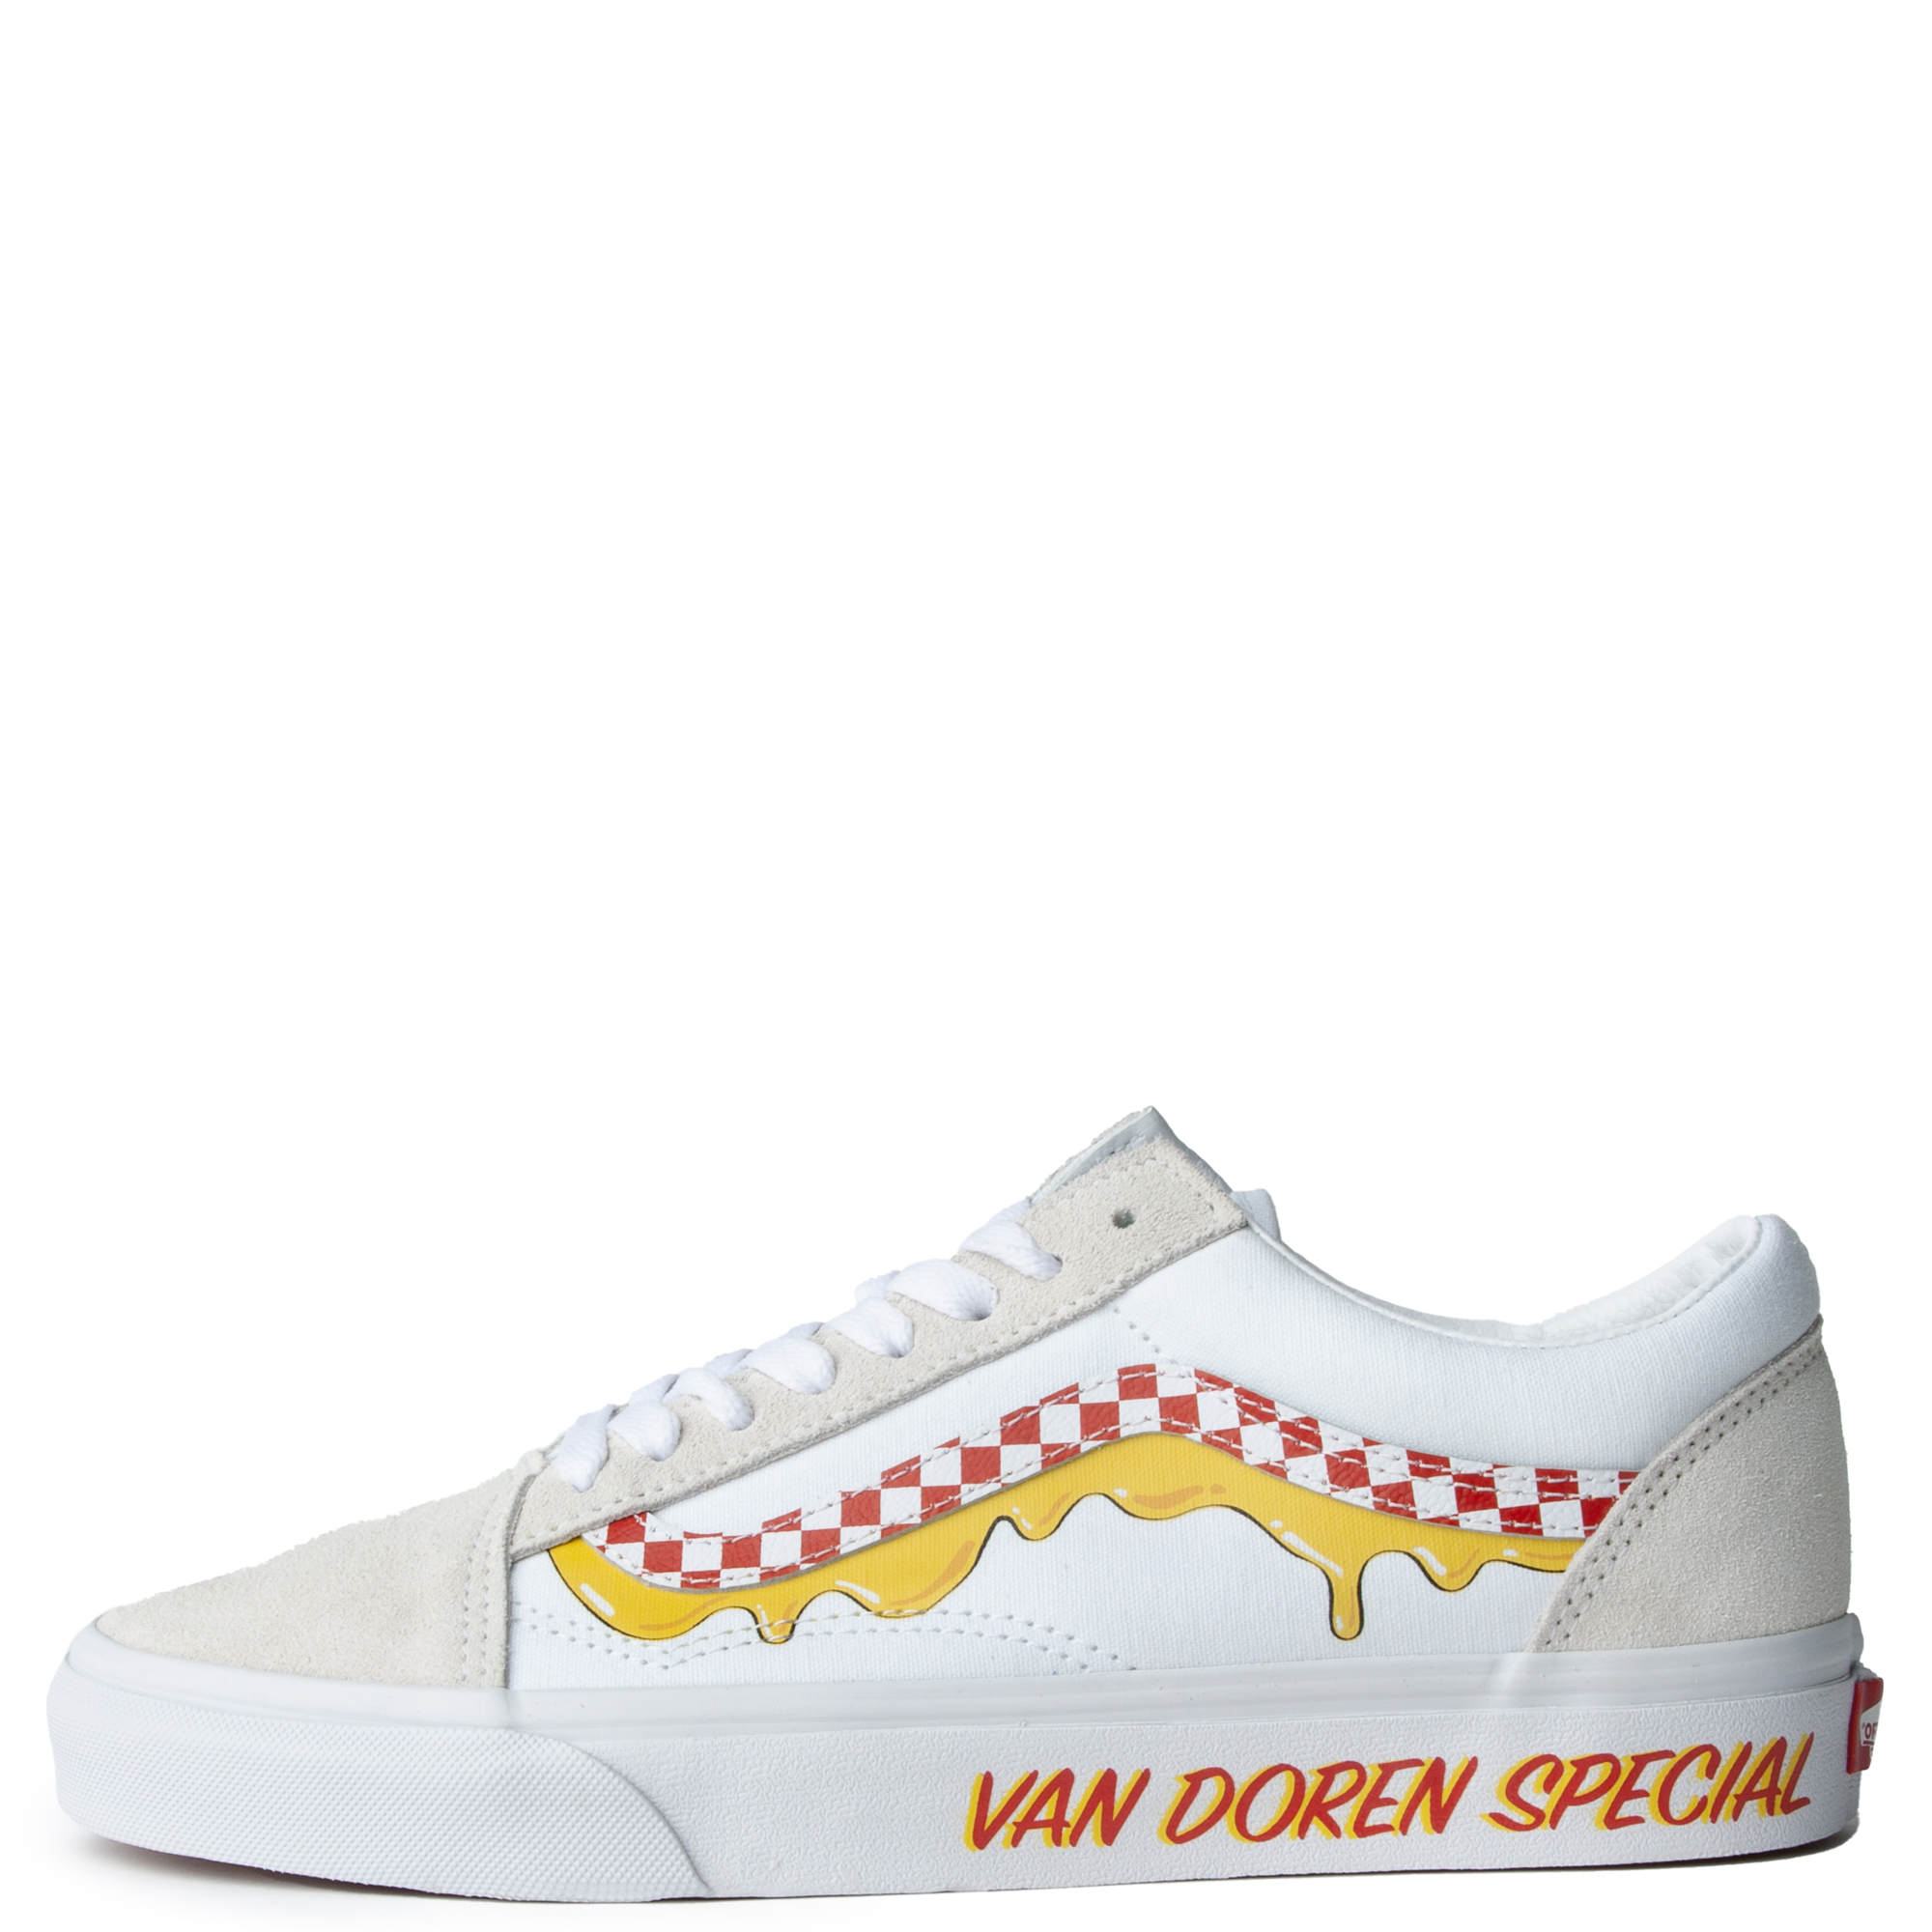 Vans Custom Old Skool Low Top Skate Shoe Yellow White Navy